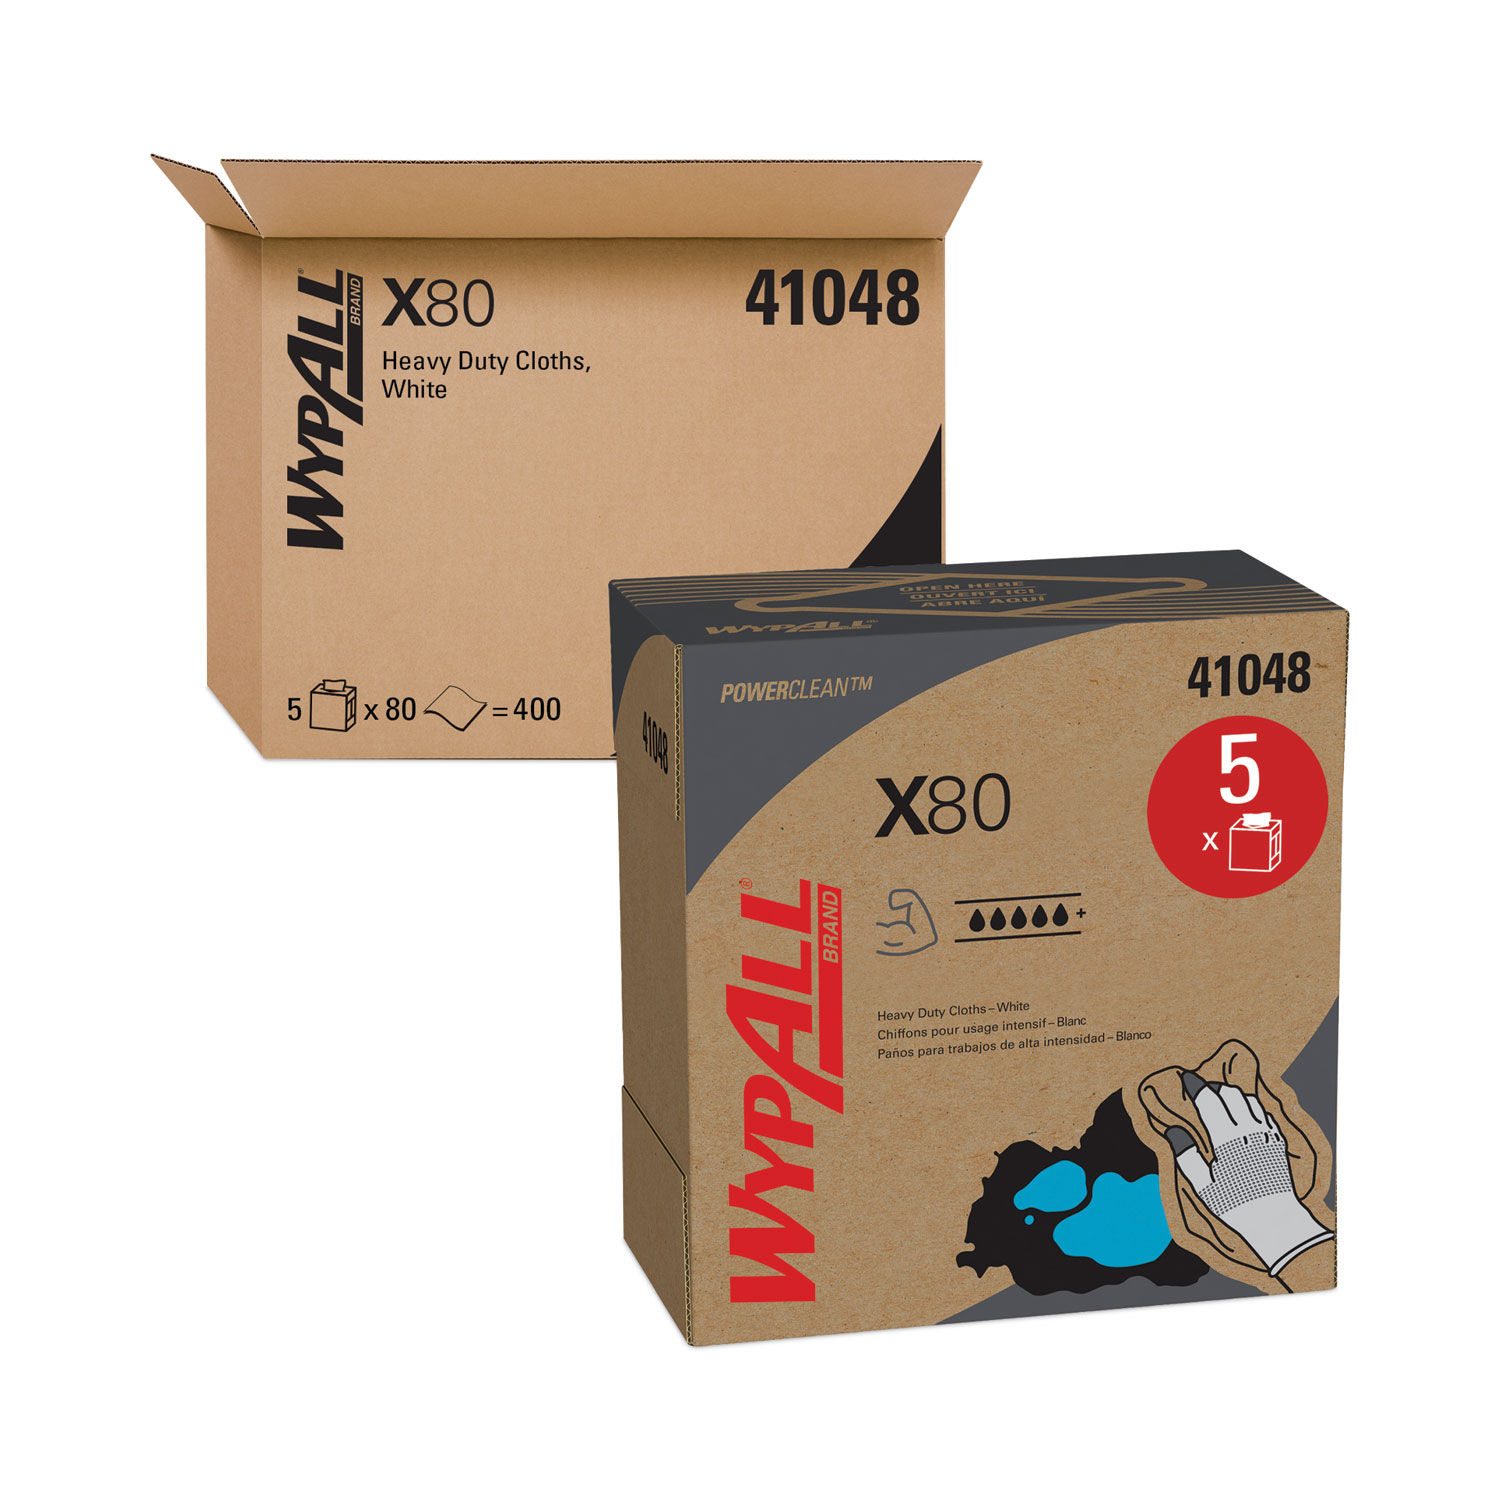 X80 Cloths HYDROKNIT, POP-UP Box, 8.34 x 16.8, White, 80/Box, 5 Boxes/Carton